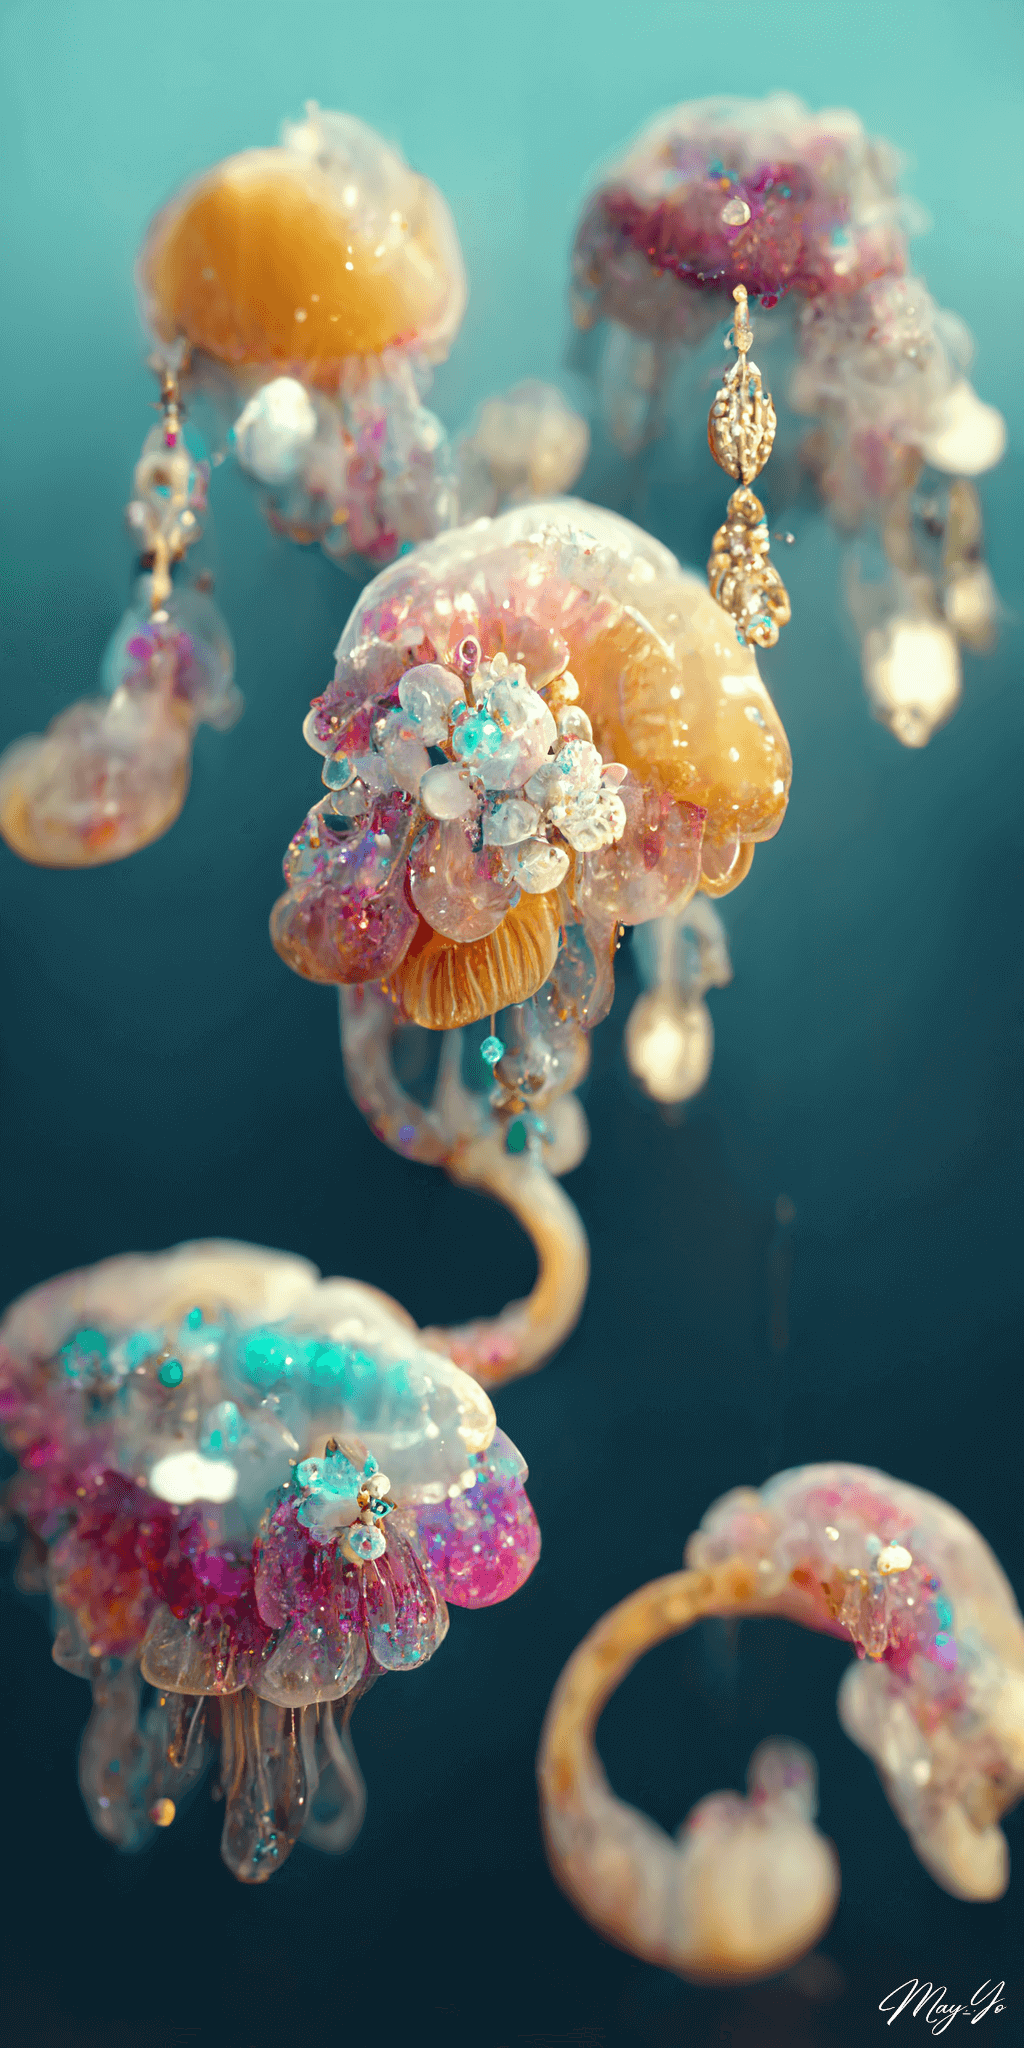 宝石でできたクラゲのイラスト待受 黄色 紫 オパール 幻想的な海の生き物のジュエリー AIイラスト壁紙 縦長画像 jellyfish jewerly illustration luxery romantic